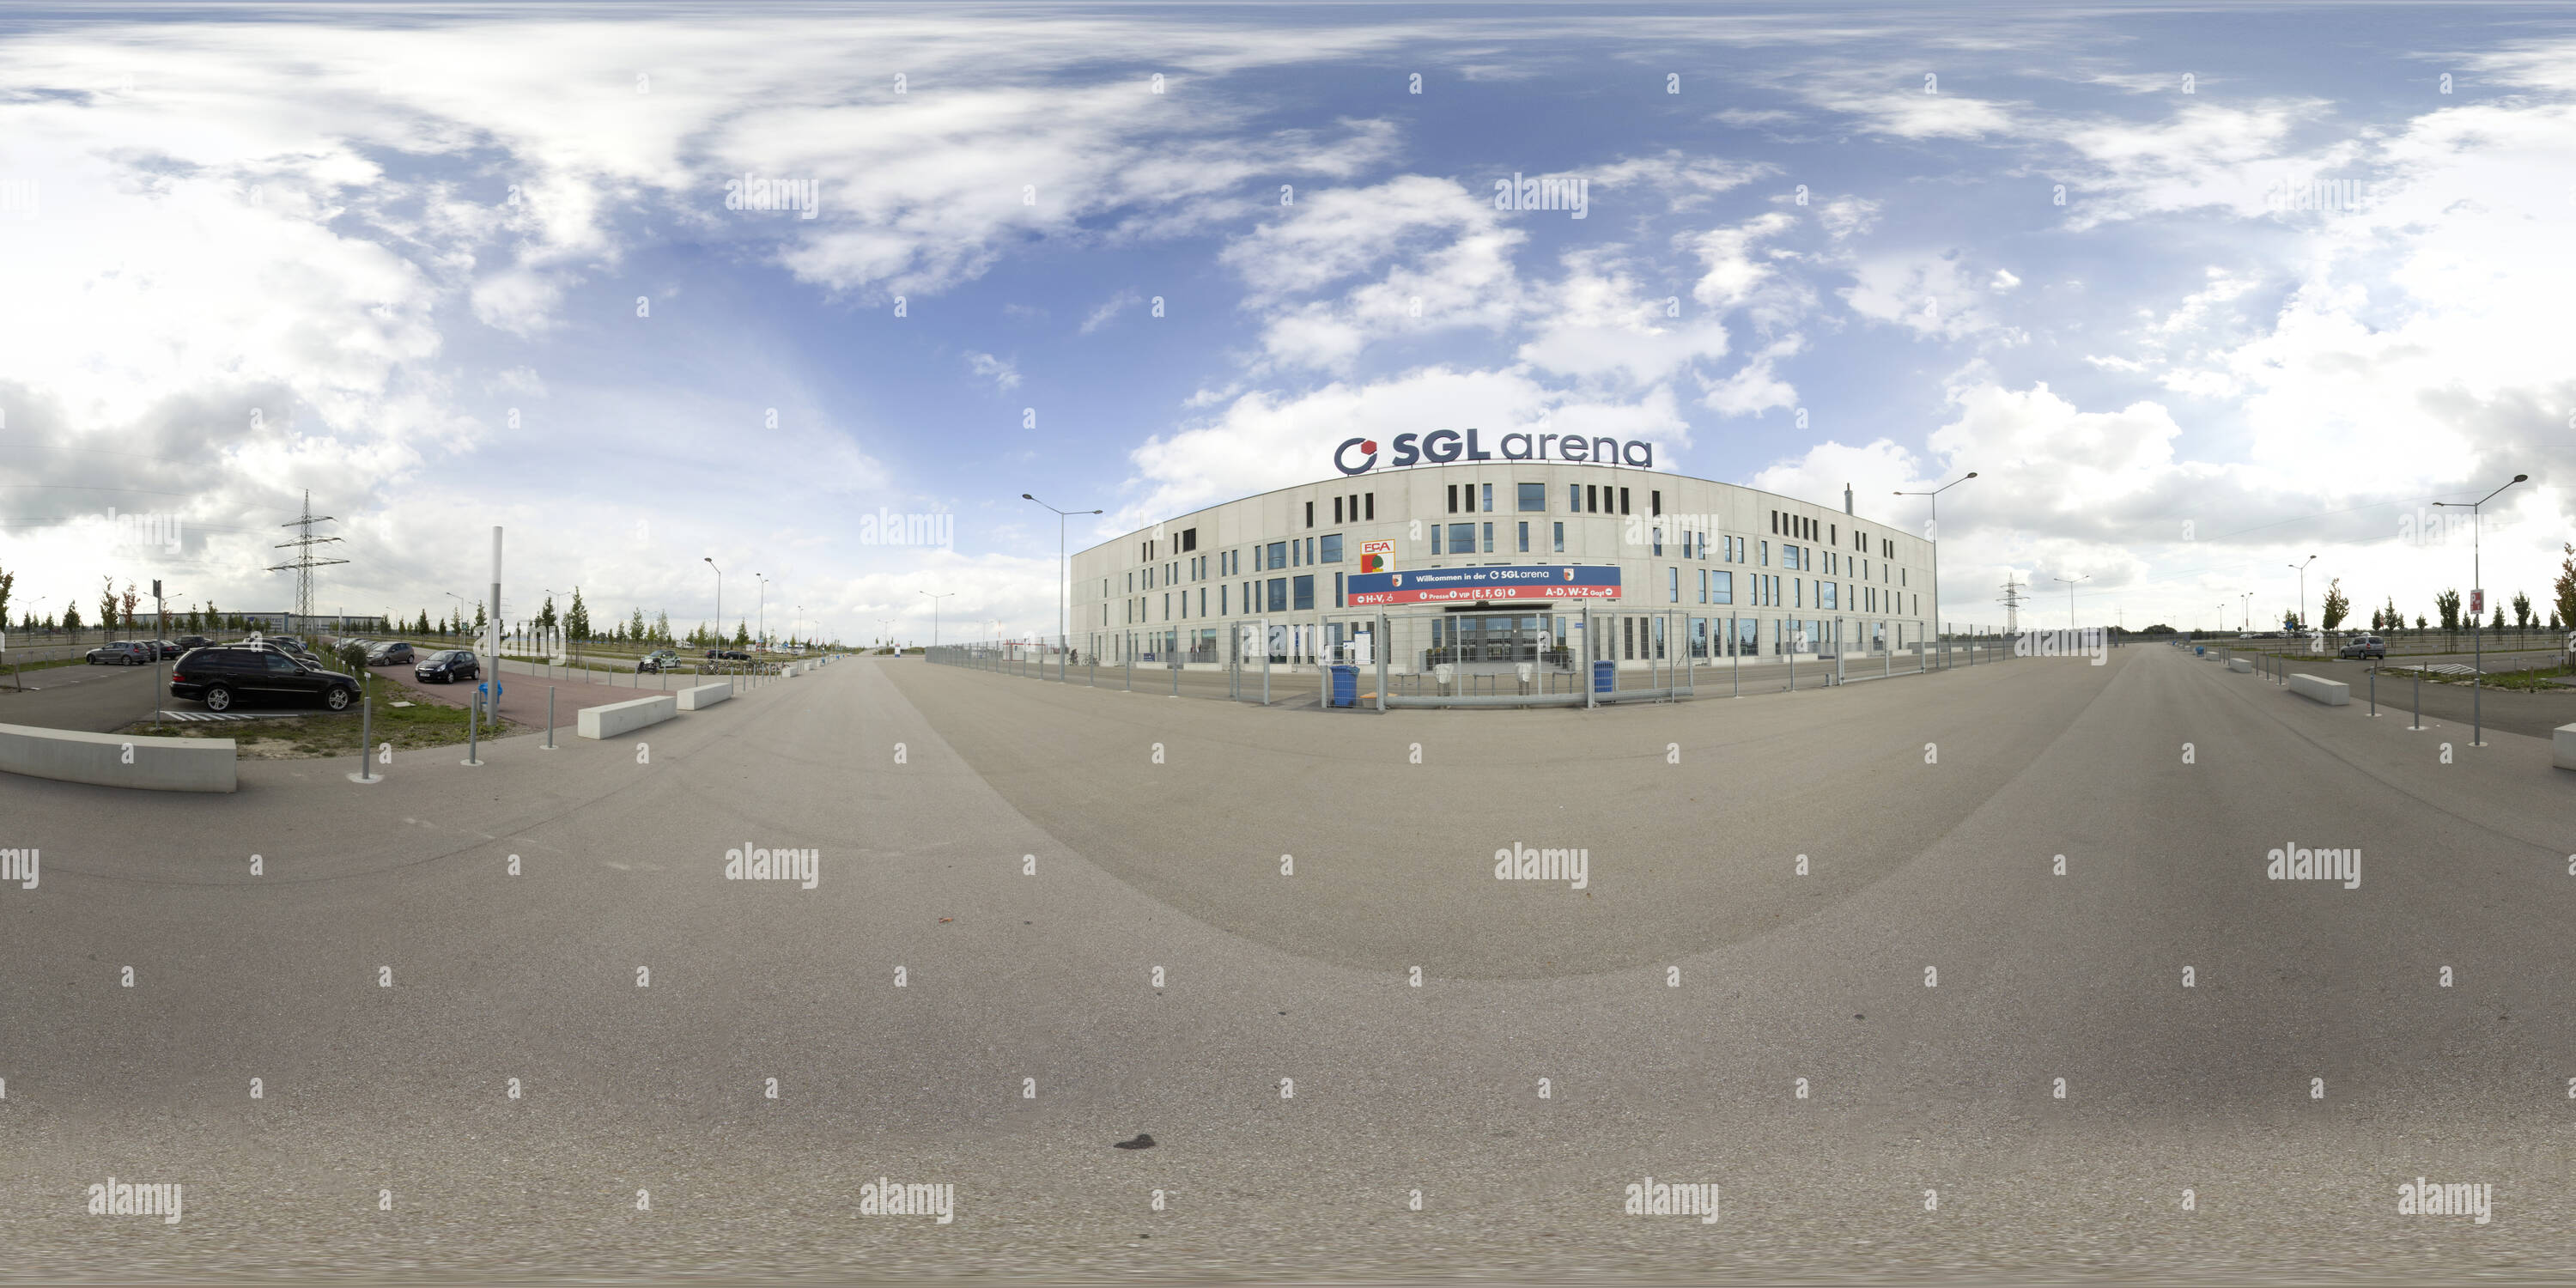 Vista panorámica en 360 grados de Sgl Arena